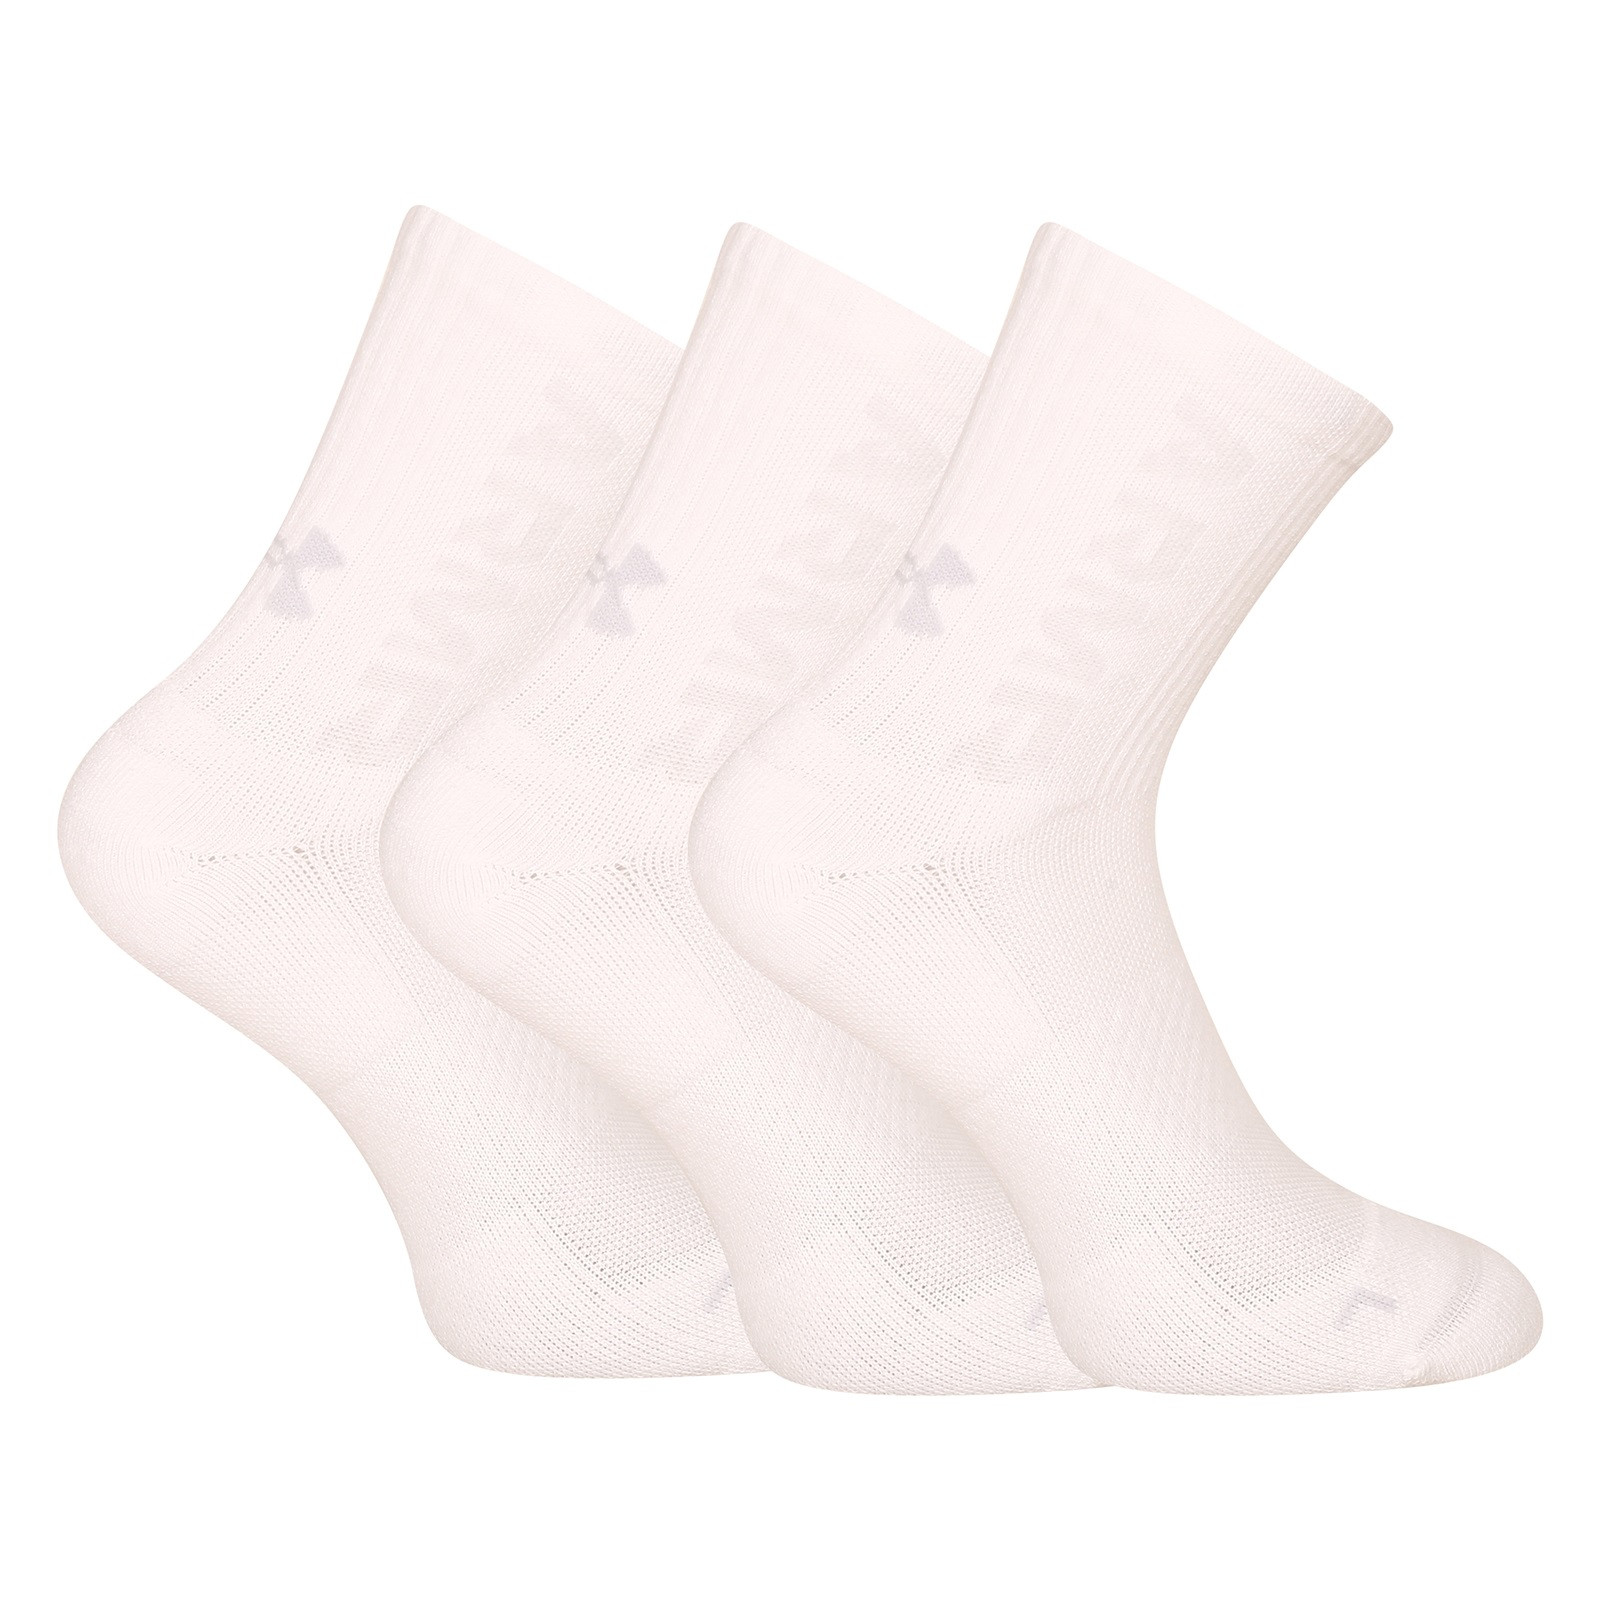 3PACK Socks Under Armour White